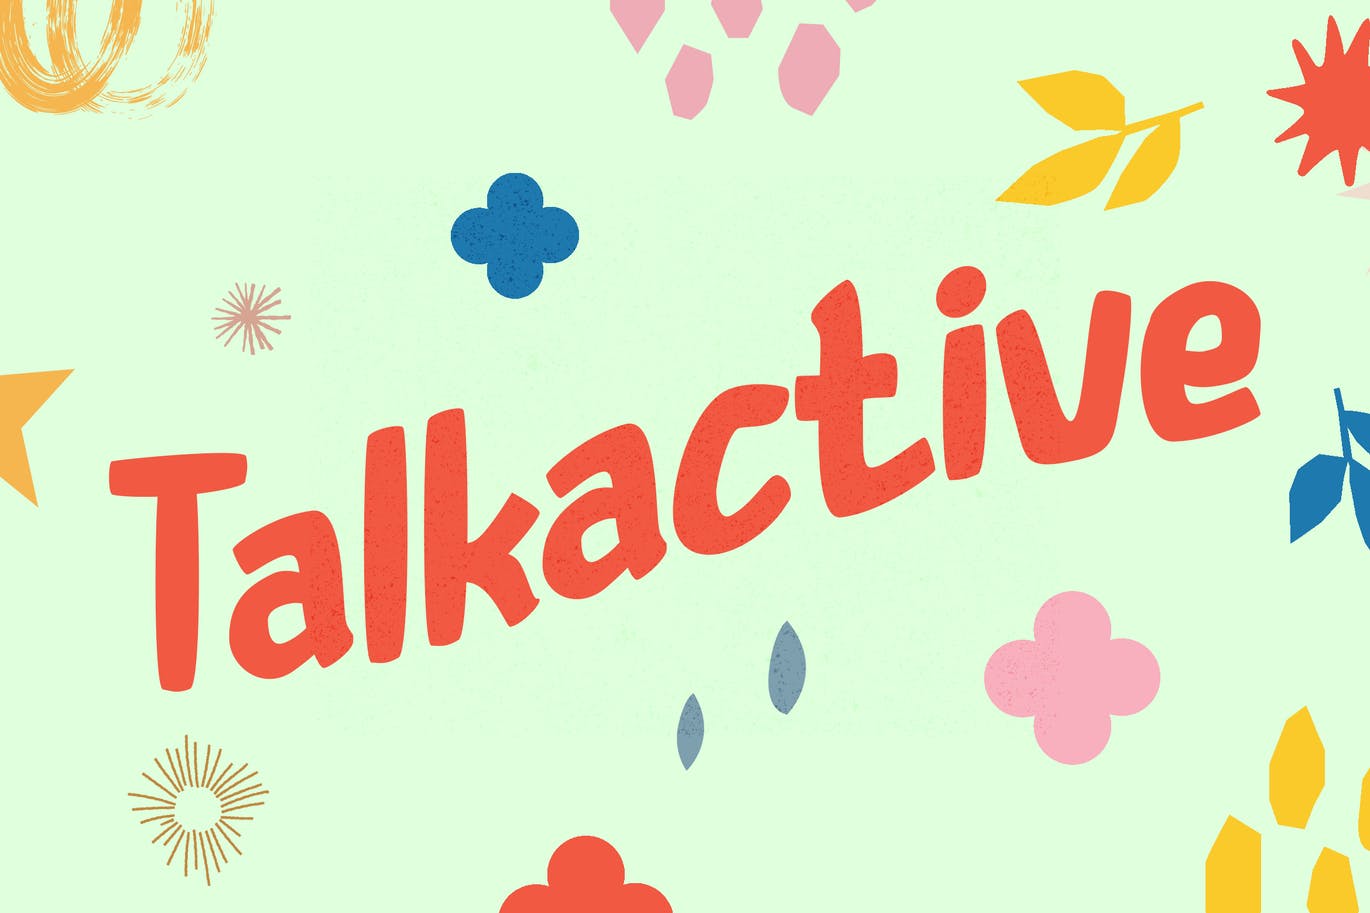 儿童项目用途无衬线字体素材 Talkactive – Kids Font 设计素材 第1张